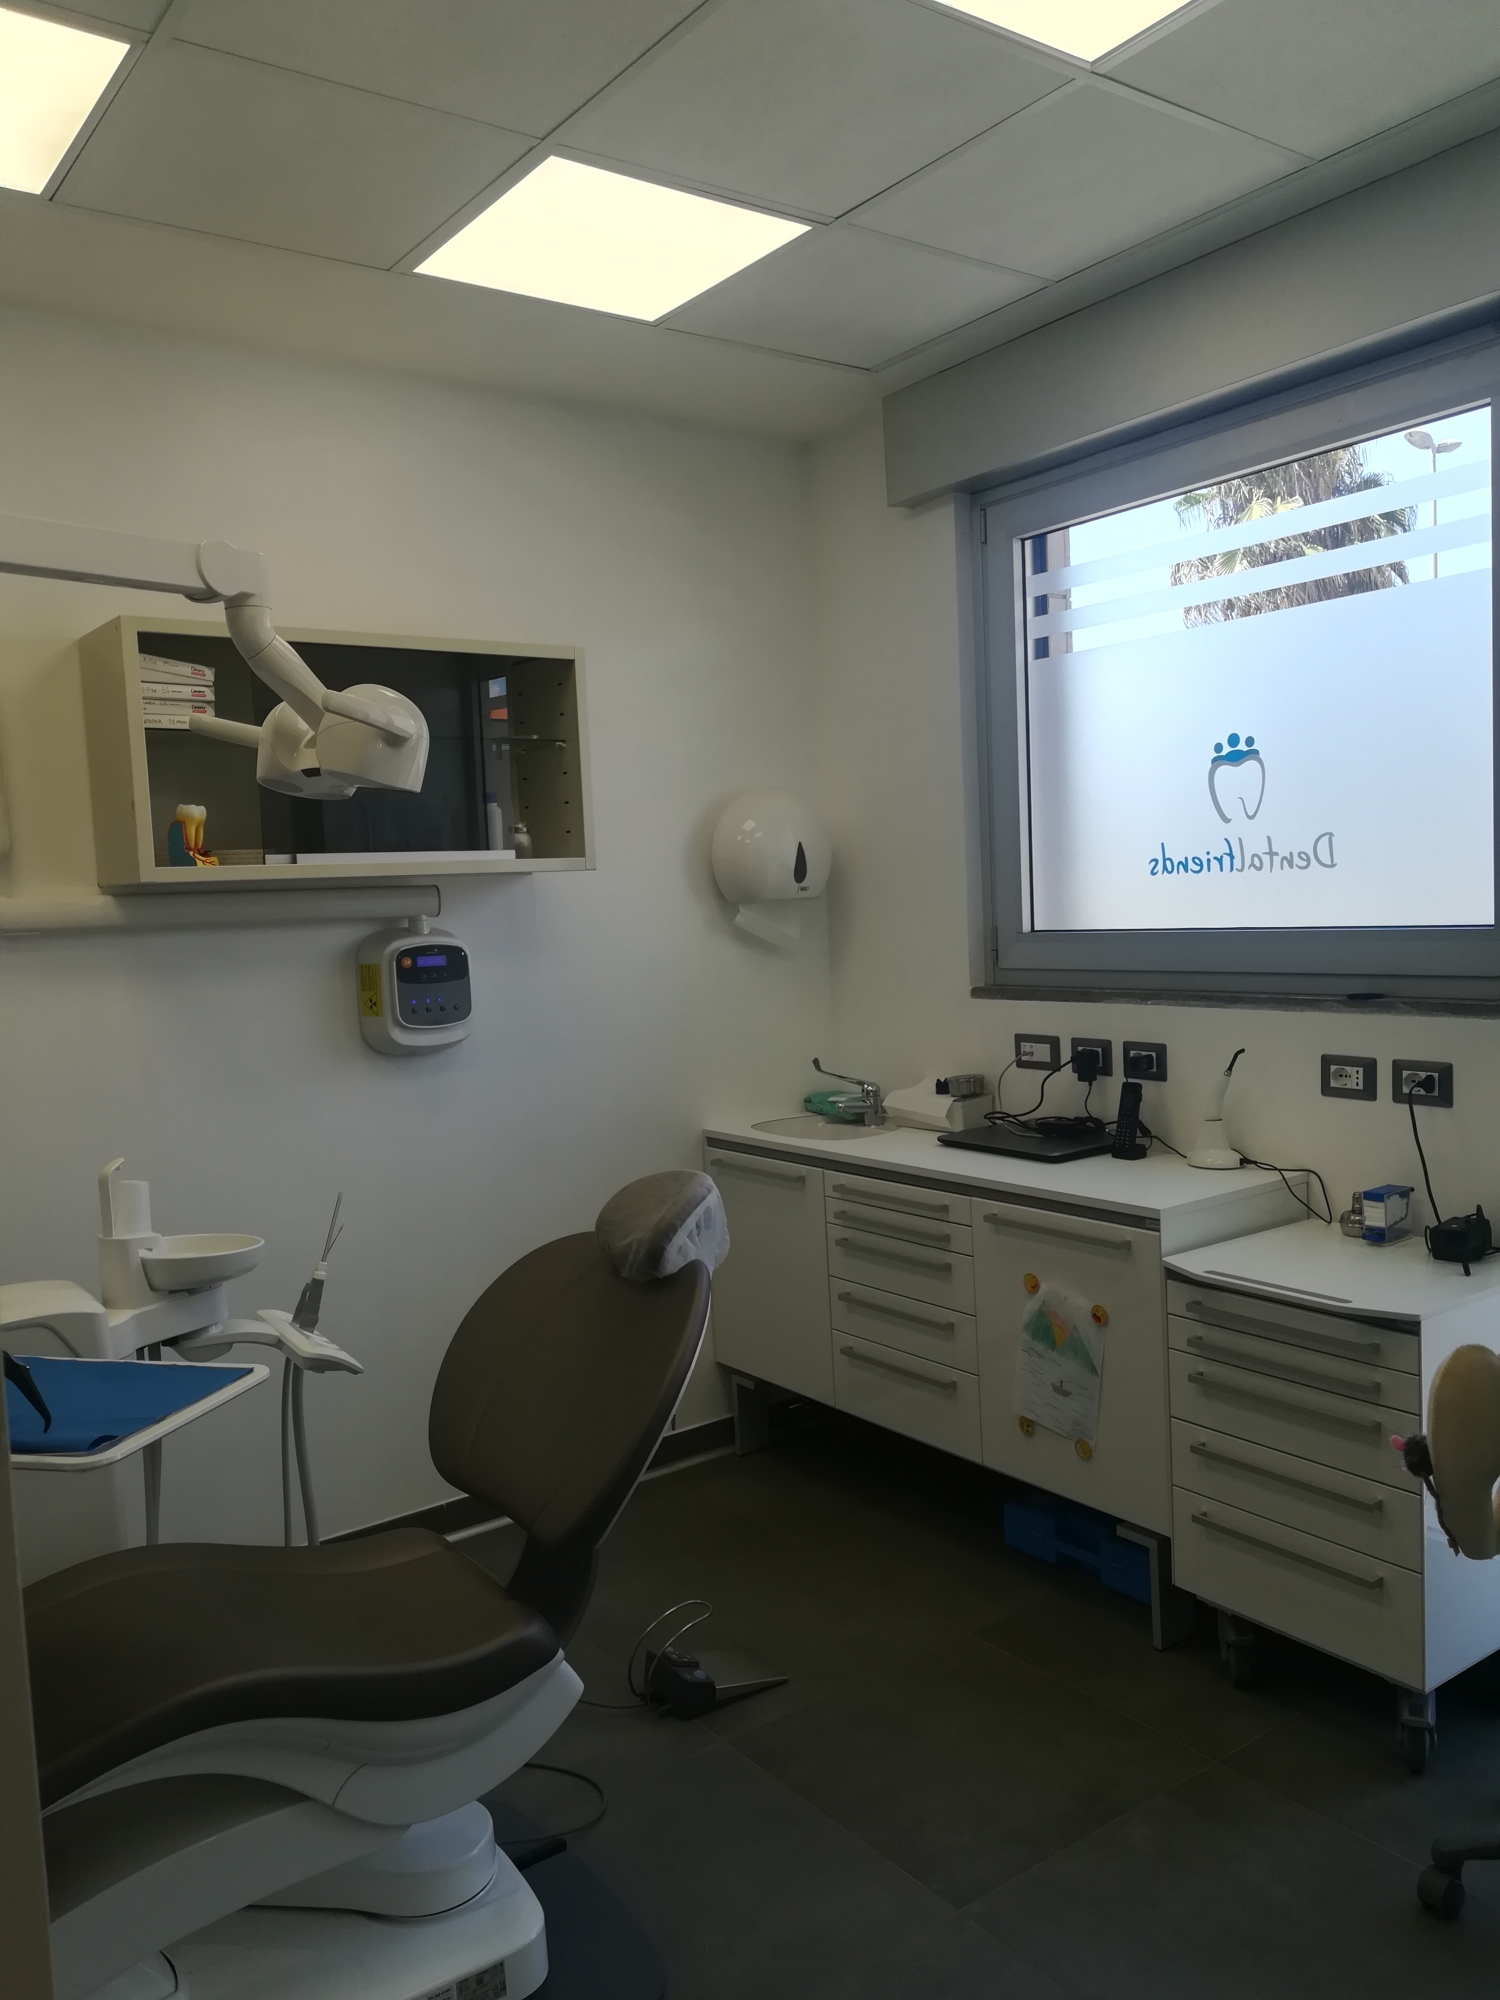 studio odontoiatrico progetto - Architetto - Pannelli Led - soffitto in cartongesso